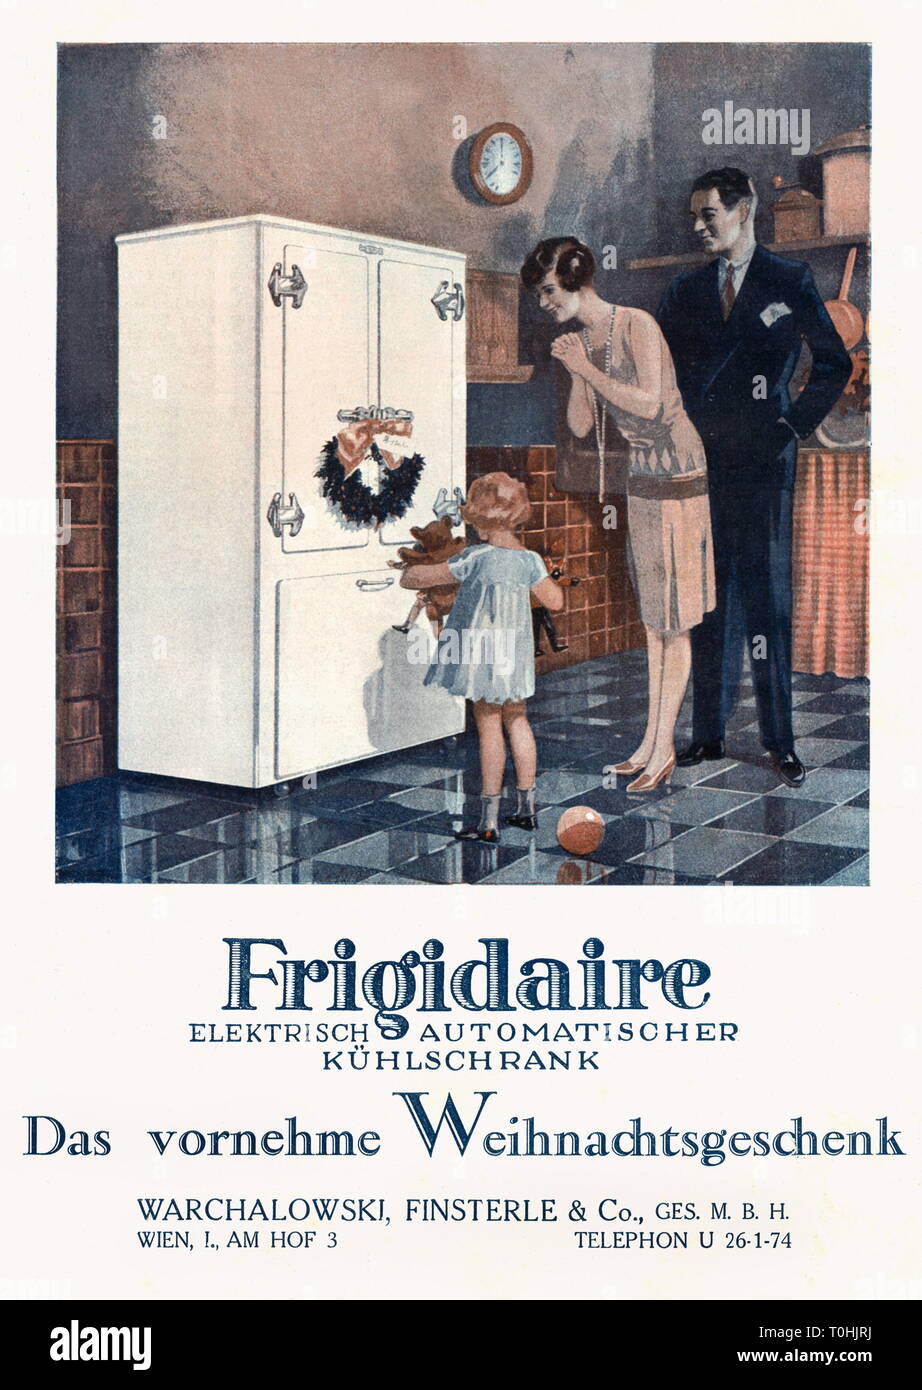 Pubblicità, elettrodomestico, frigorifero della marca Frigidaire, donna è felice circa il frigorifero come regalo di Natale, la rivista la pubblicità della ditta Warchalowski, Finsterle e Co. GmbH, Vienna, Austria, 1928 Additional-Rights-Clearance-Info-Not-Available Foto Stock